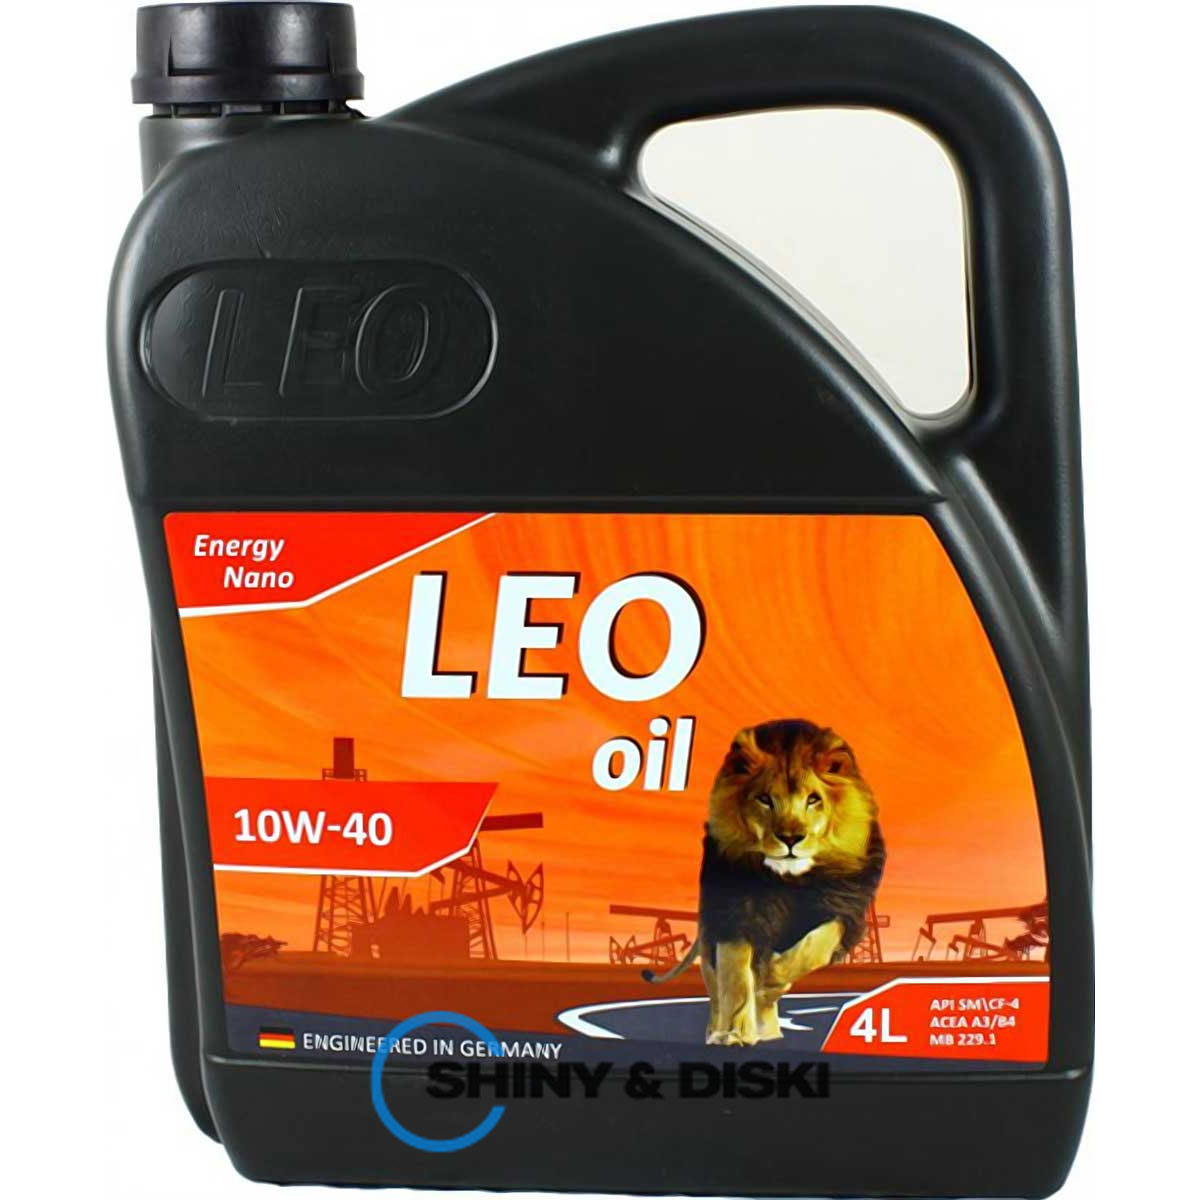 leo oil energy nano